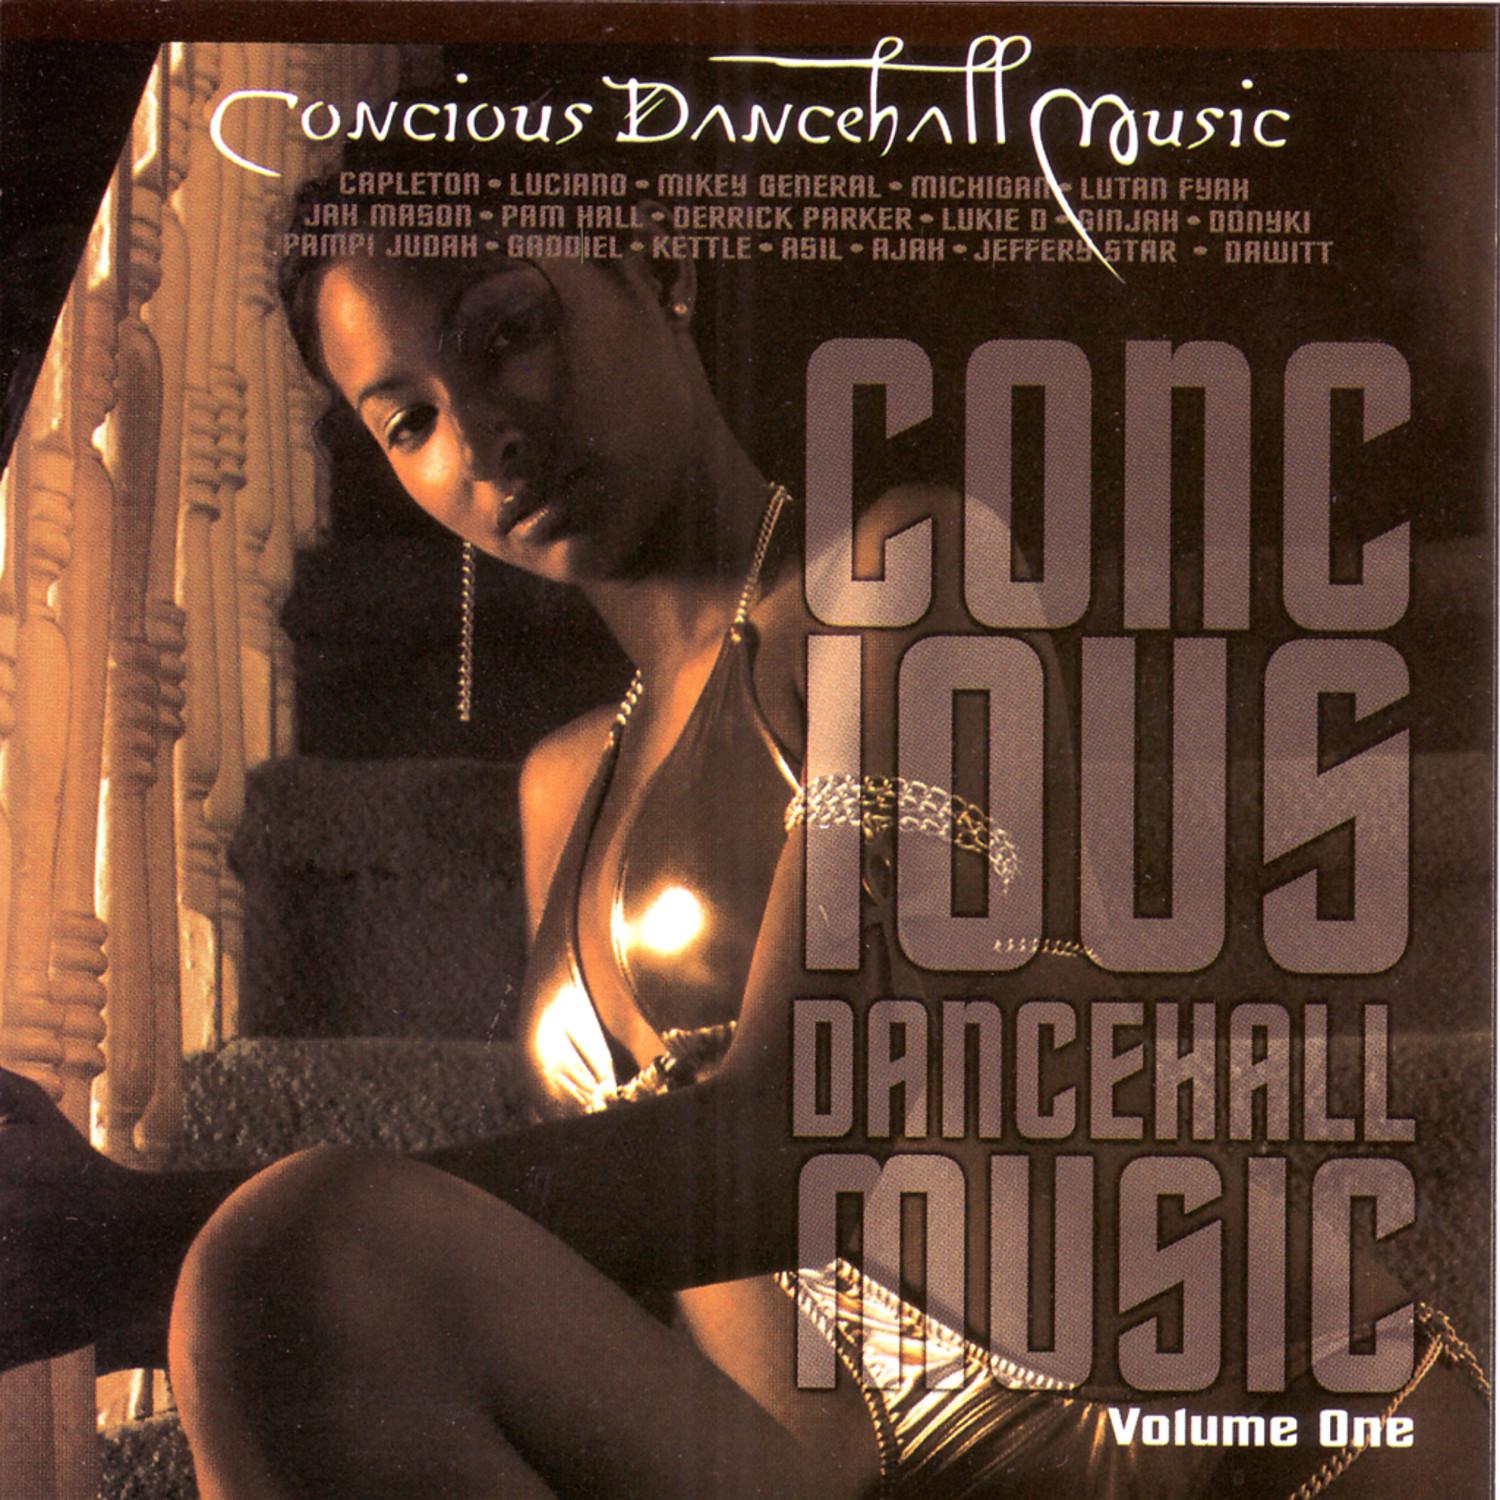 Concious Dancehall Music Vol. 1